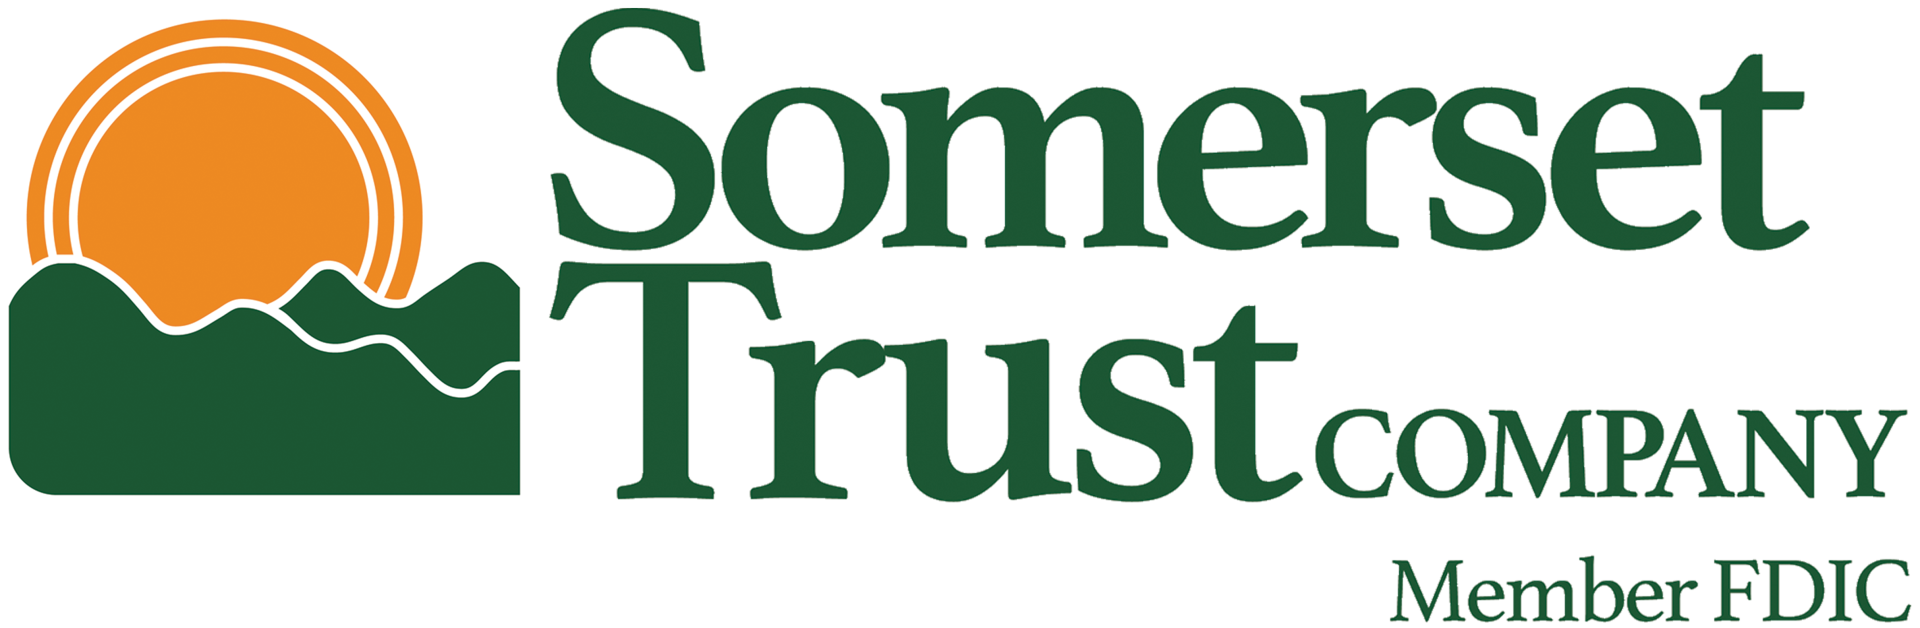 Somerset Trust Logo Horizontal